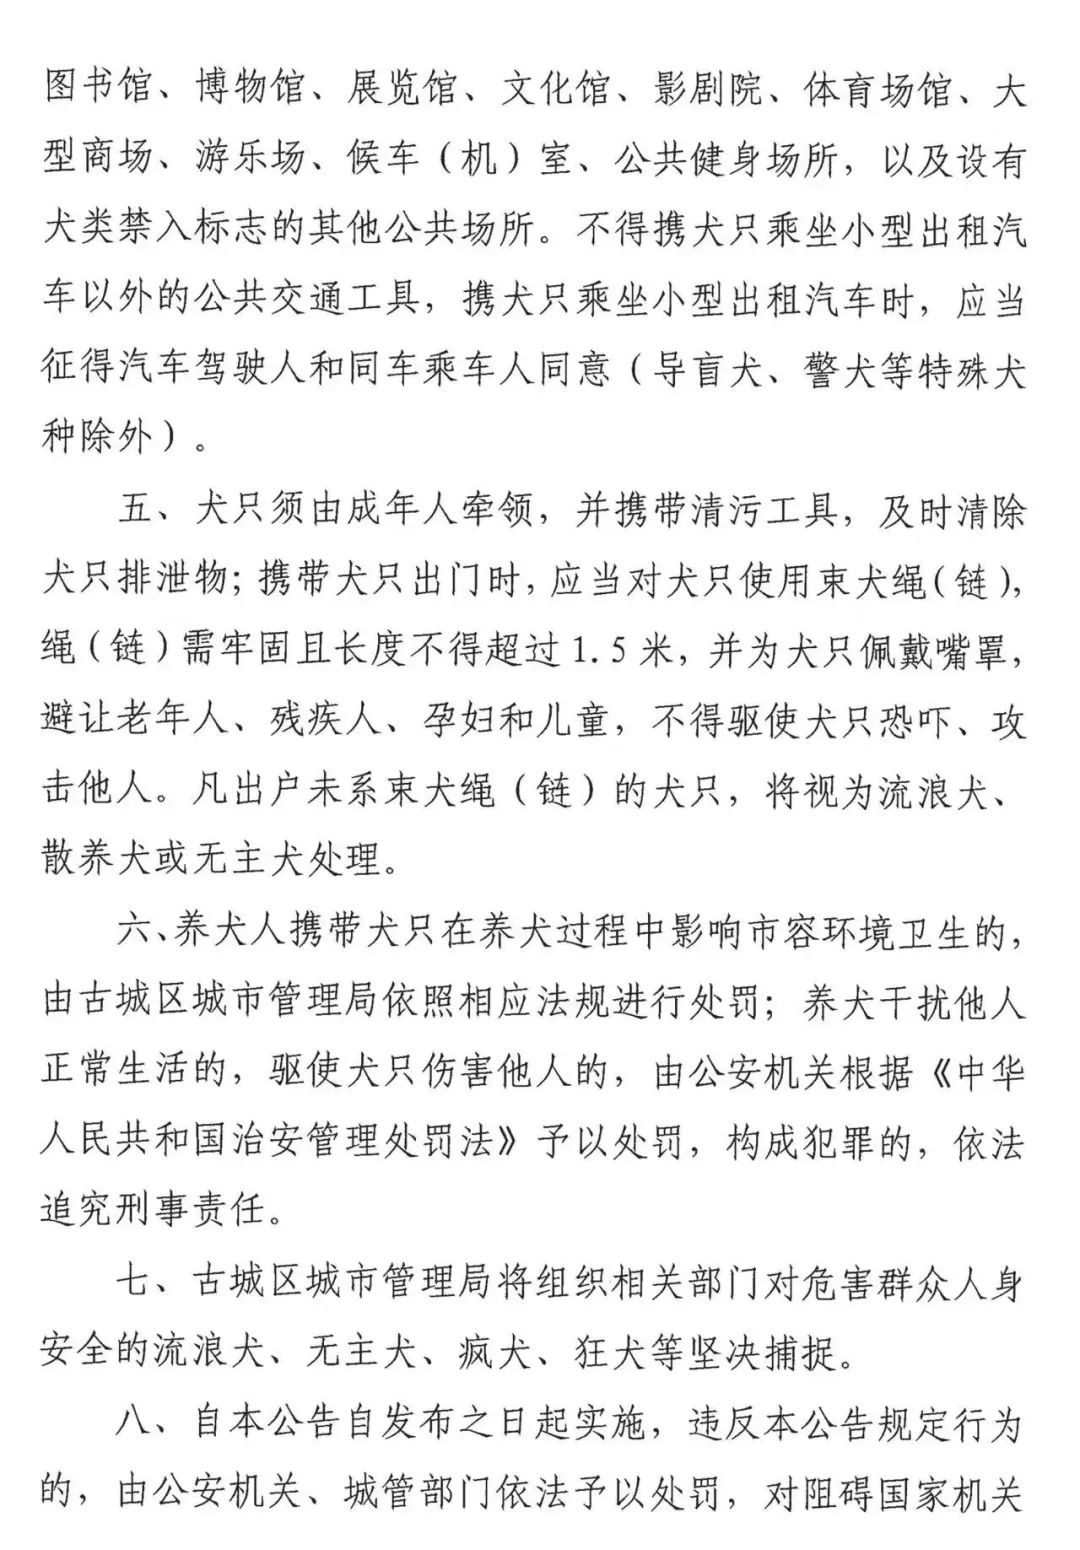 丽江市发布文明养犬公告，犬只进入被禁地区将受处罚 (3).jpg